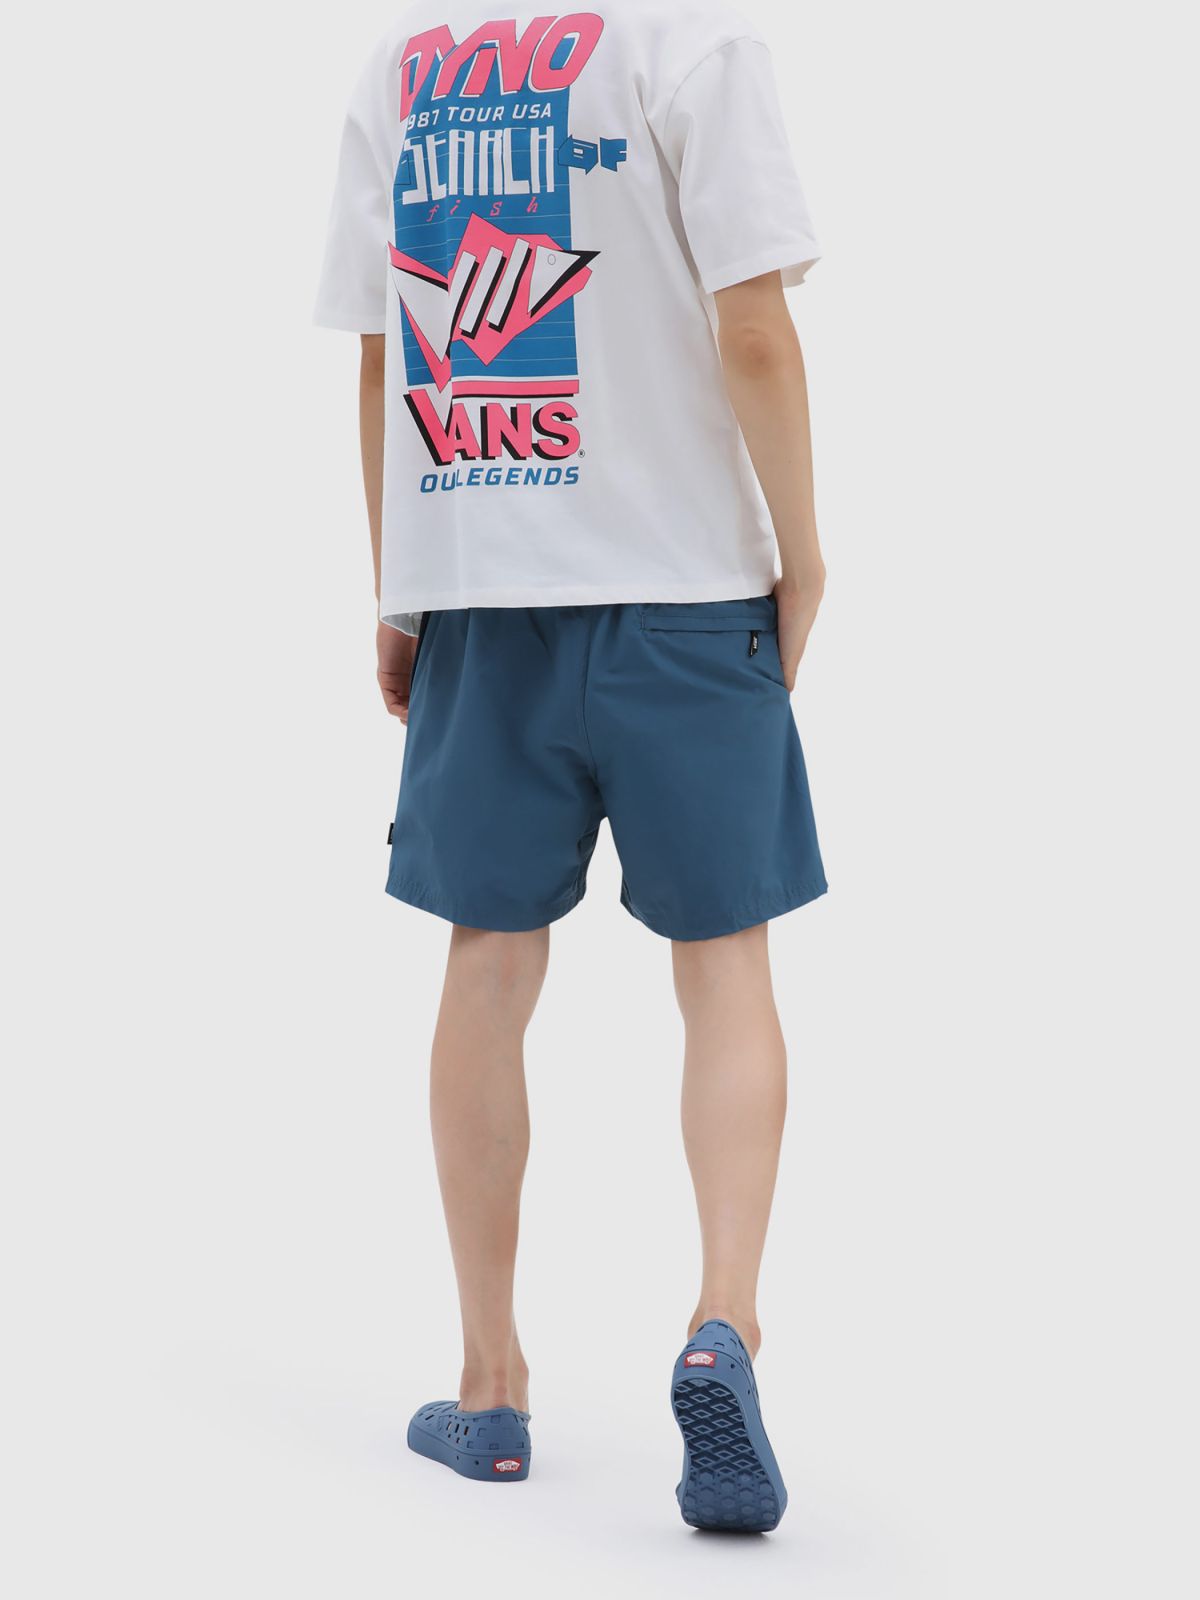  מכנסי בגד ים עם לוגו של VANS